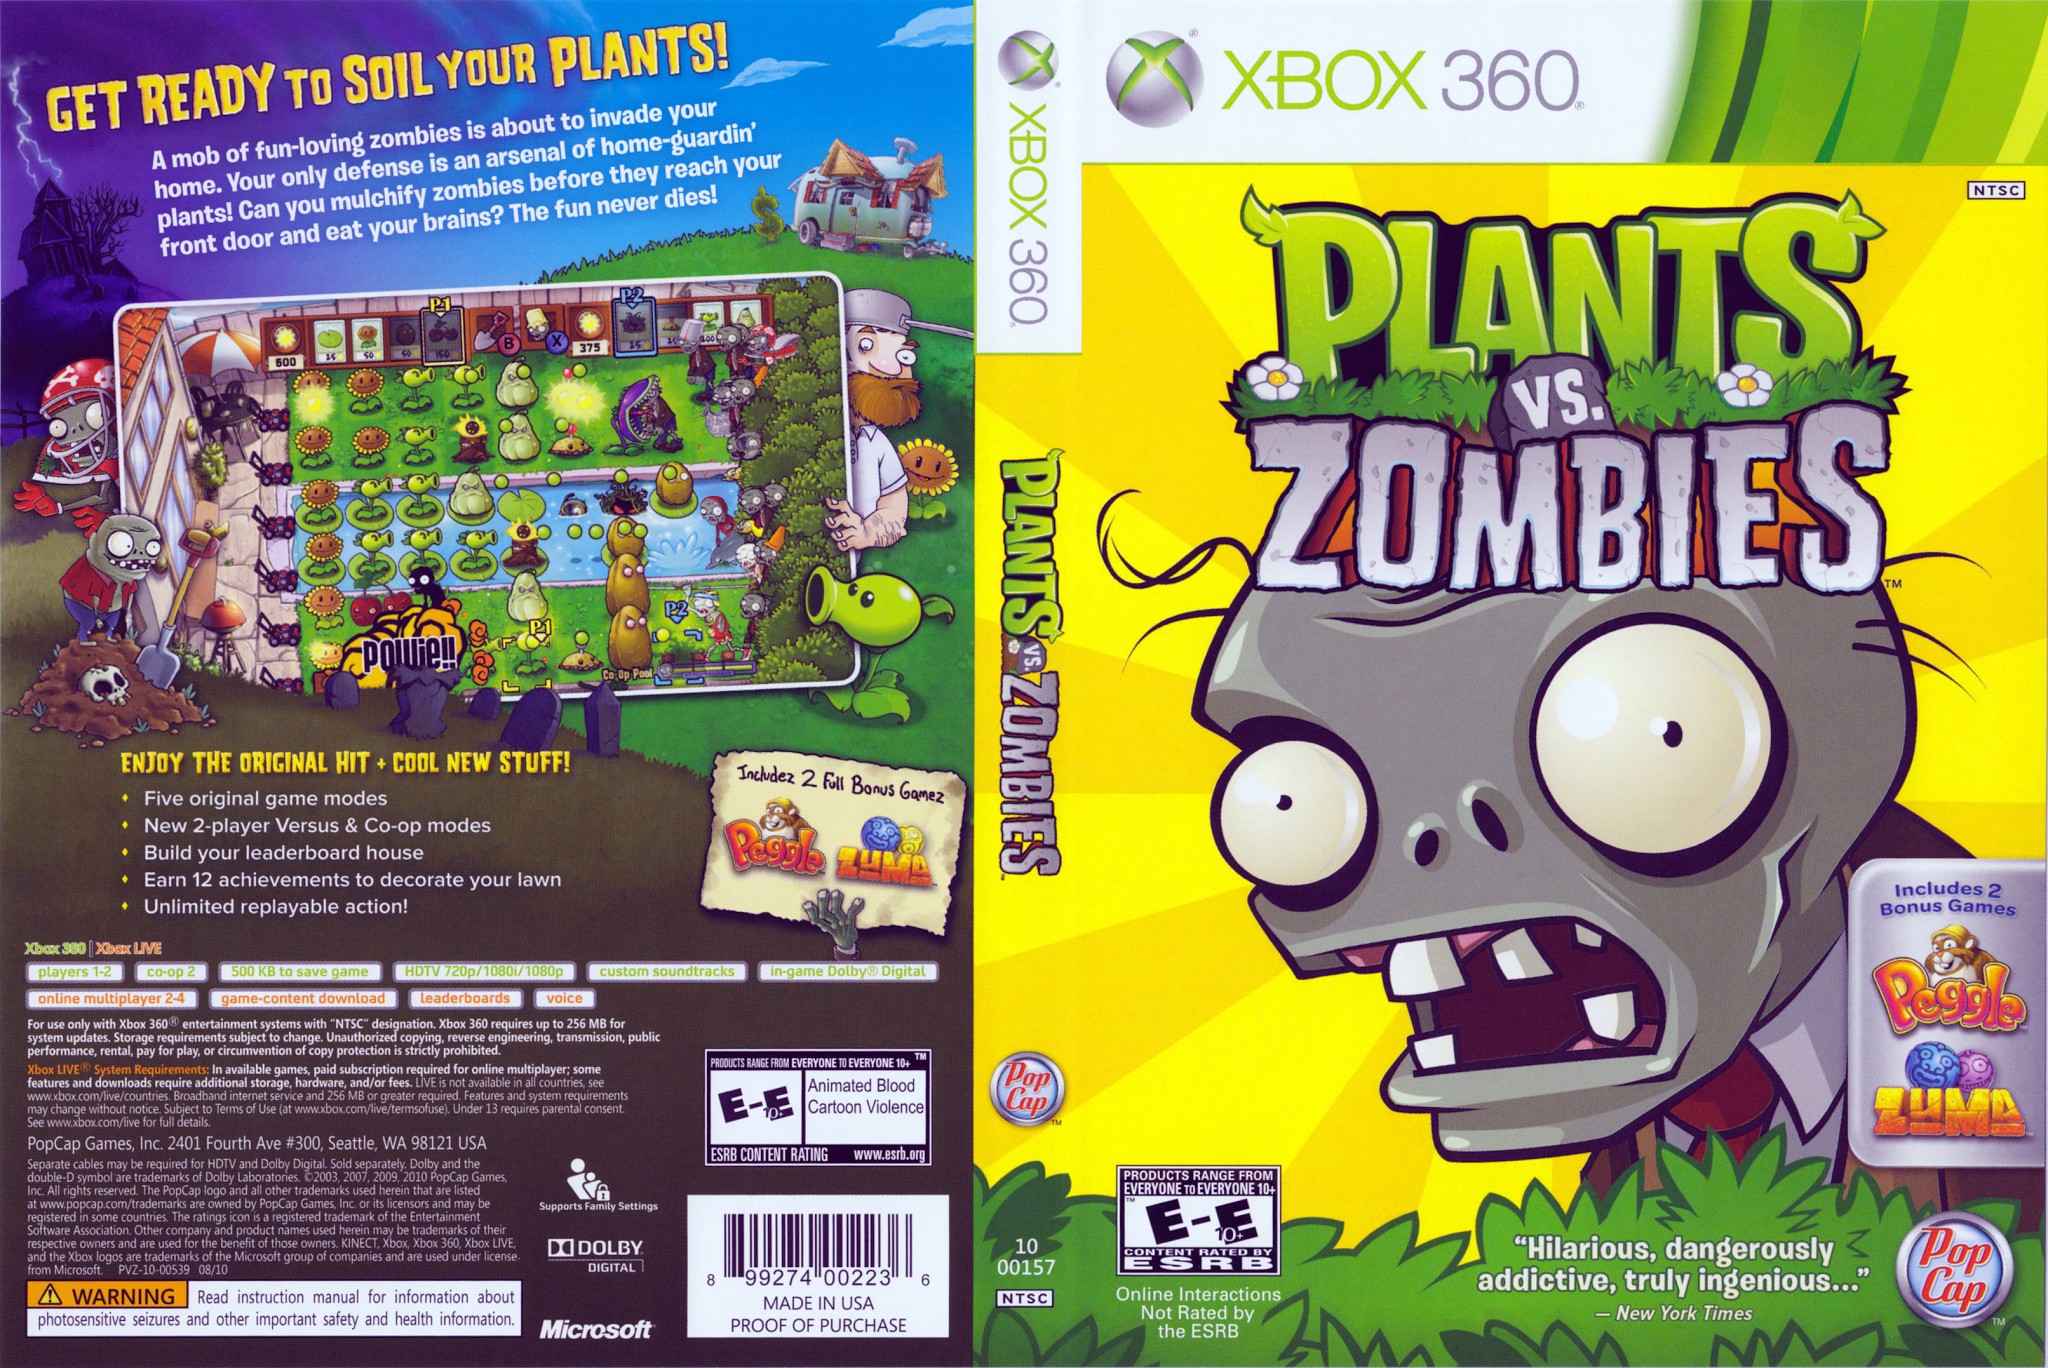 Меню пвз 1. Plants vs. Zombies хбокс 360. Диски Xbox 360 Plants vs Zombies. Диск Plants vs Zombies 1 Xbox 360. Растения против зомби на Xbox 360.